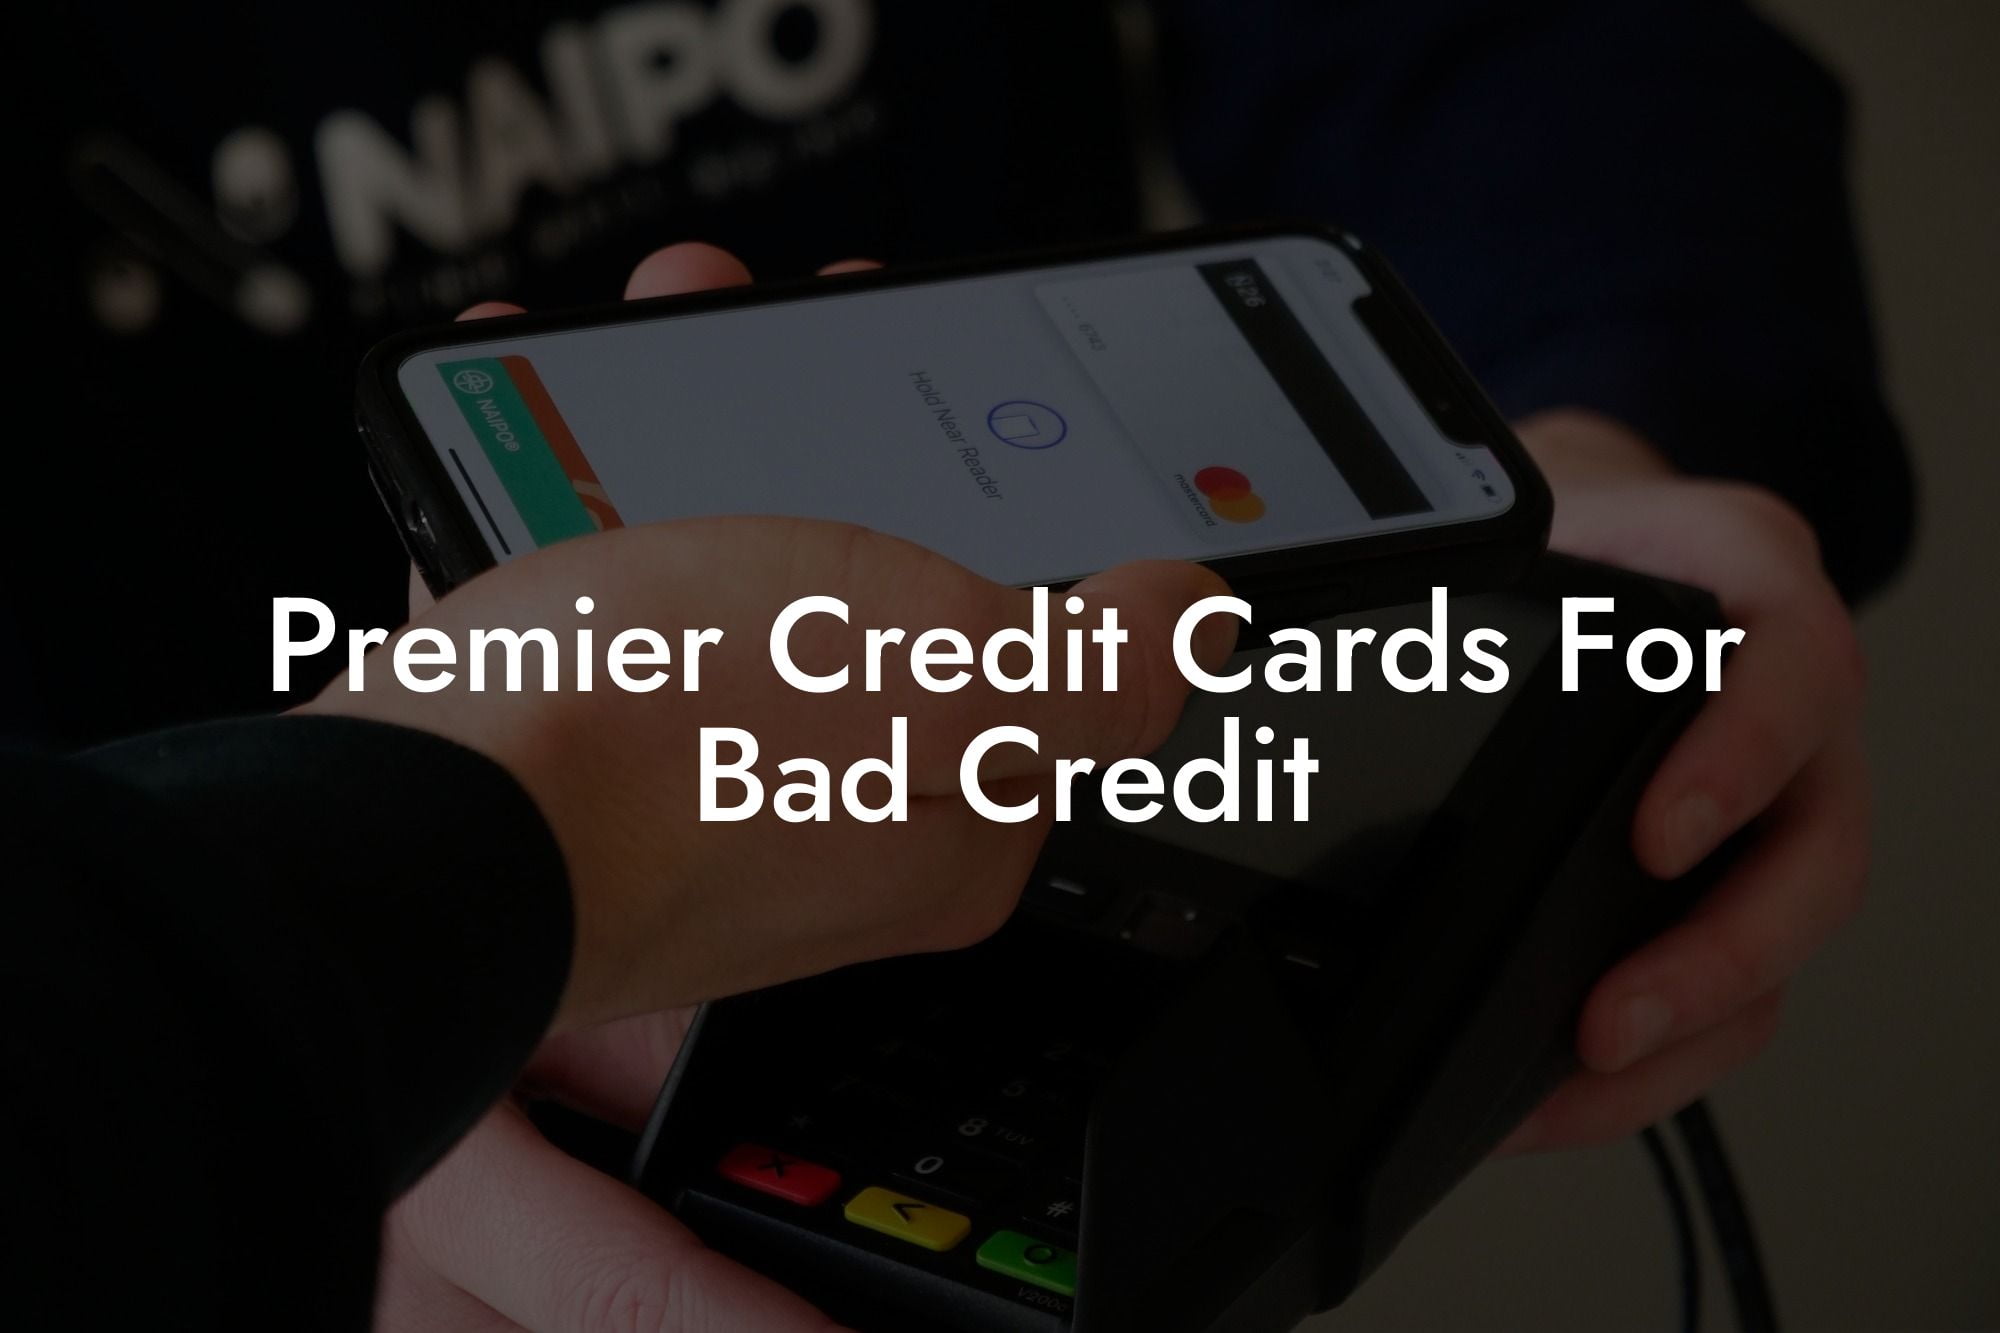 Premier Credit Cards For Bad Credit